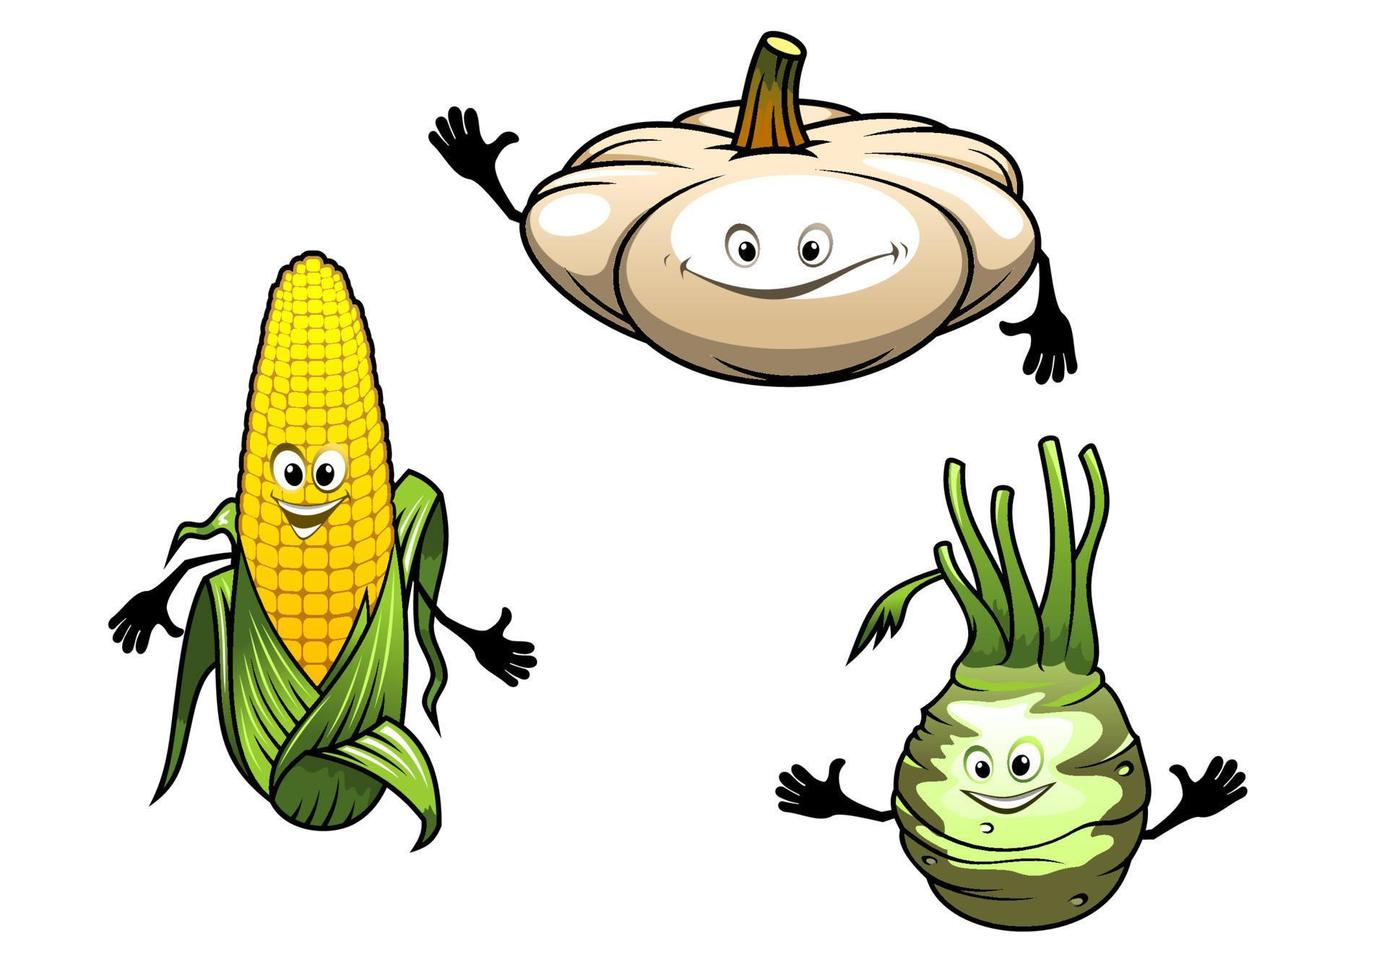 legumes de desenho animado de abóbora, milho e nabo vetor